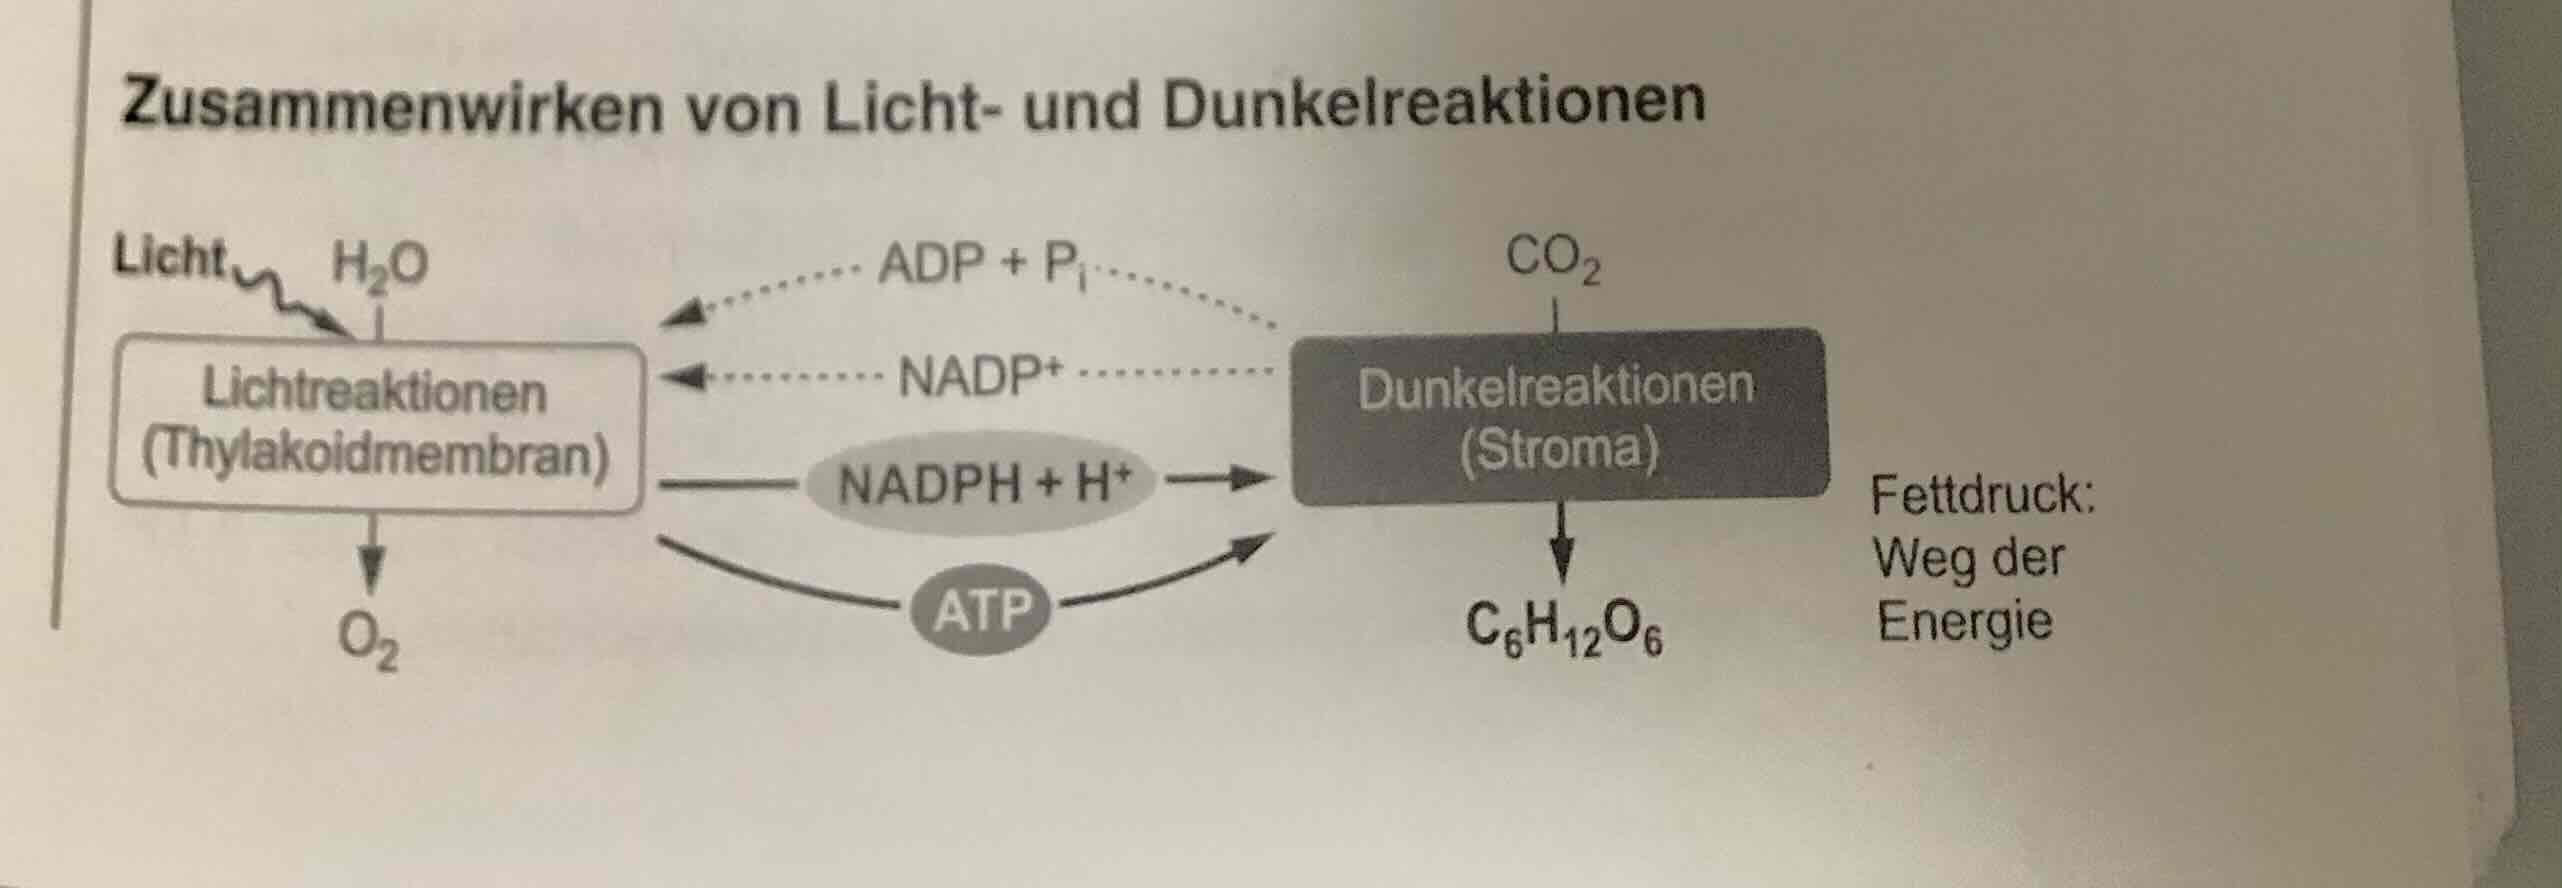 <ul><li><p>Stroma der Chloroplas-ten </p></li></ul><ul><li><p>﻿﻿CO2-Fixierung: Kohlenstoffdioxid → Enzyms Ru-bisCO an Ribulose-1,5-bisphospha -bunden.</p></li><li><p>unter ATP und NADPH + H+ (aus den lichtabhängigen Reaktionen) re-duziert</p></li><li><p>Aus ein Teil Glucose aufgebaut.</p></li><li><p>NADP+ ADP und P stehen für die lichtabhängigen Reaktionen zur Verfügung.</p></li><li><p>﻿﻿Regeneration des CO2-Akzeptors: Aus Rest unter ATP-Verbrauch der primäre CO2-Akzeptor RubP wiederhergestellt.</p></li></ul>